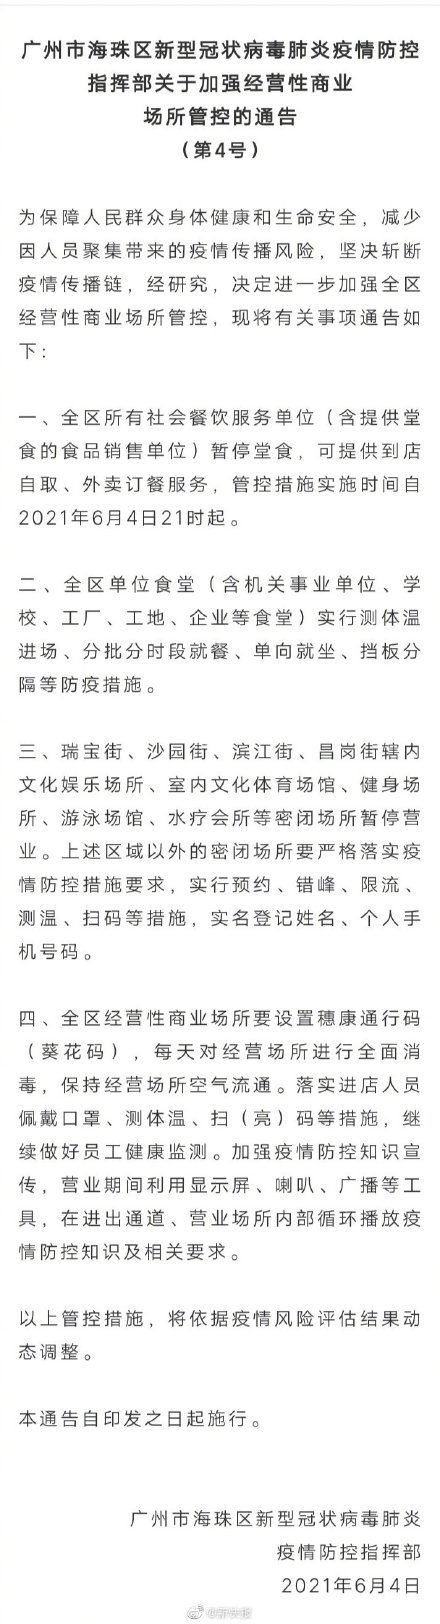 广州海珠区社会餐饮服务单位暂停堂食